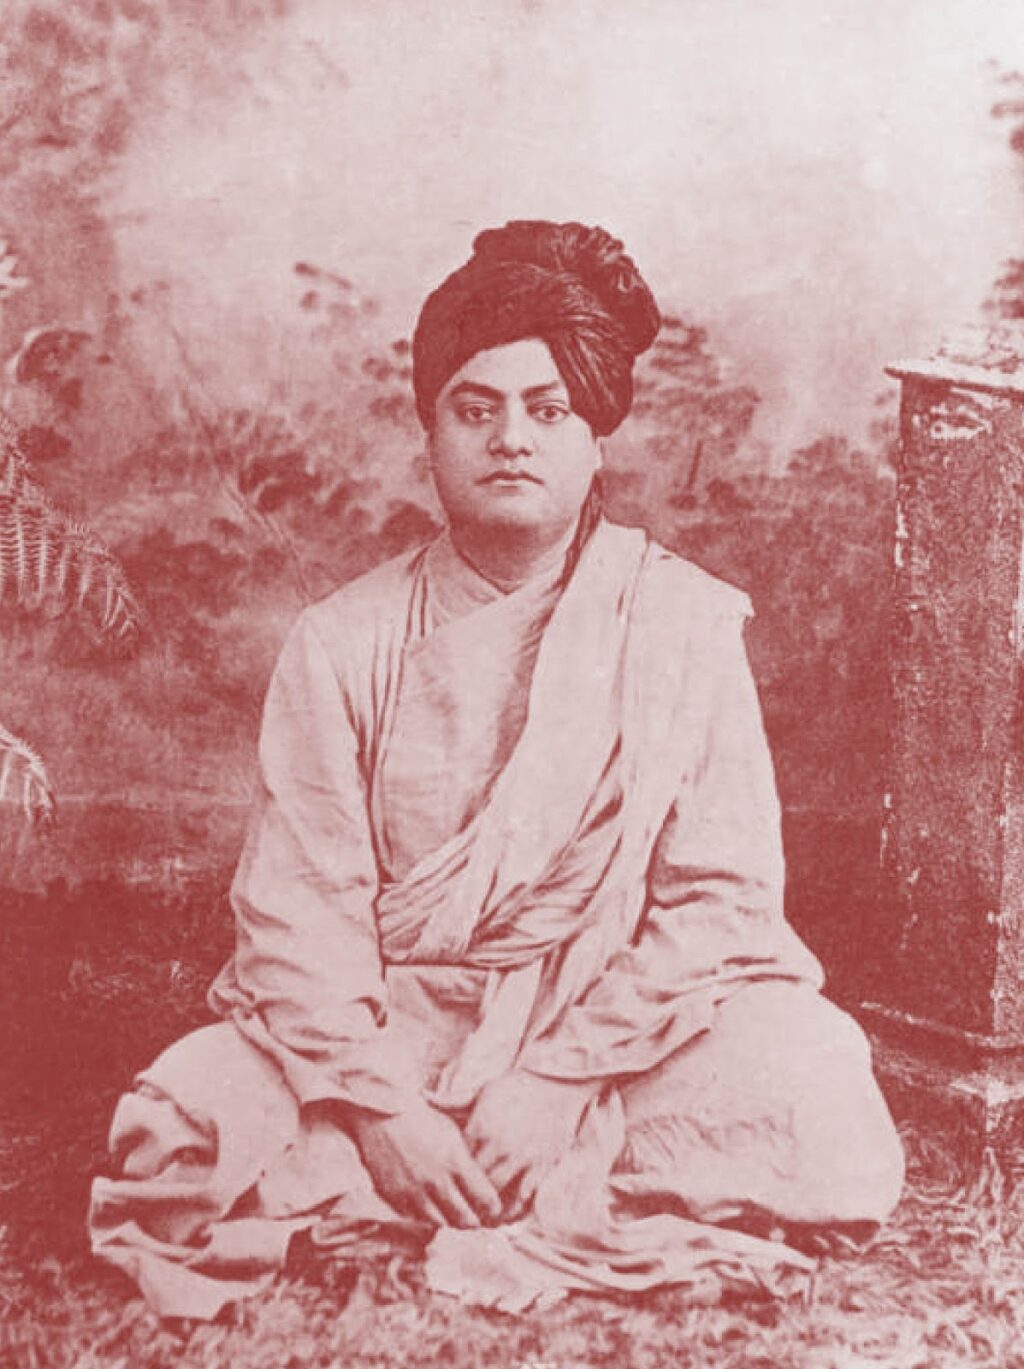 Swami Vivekananda in Colombo